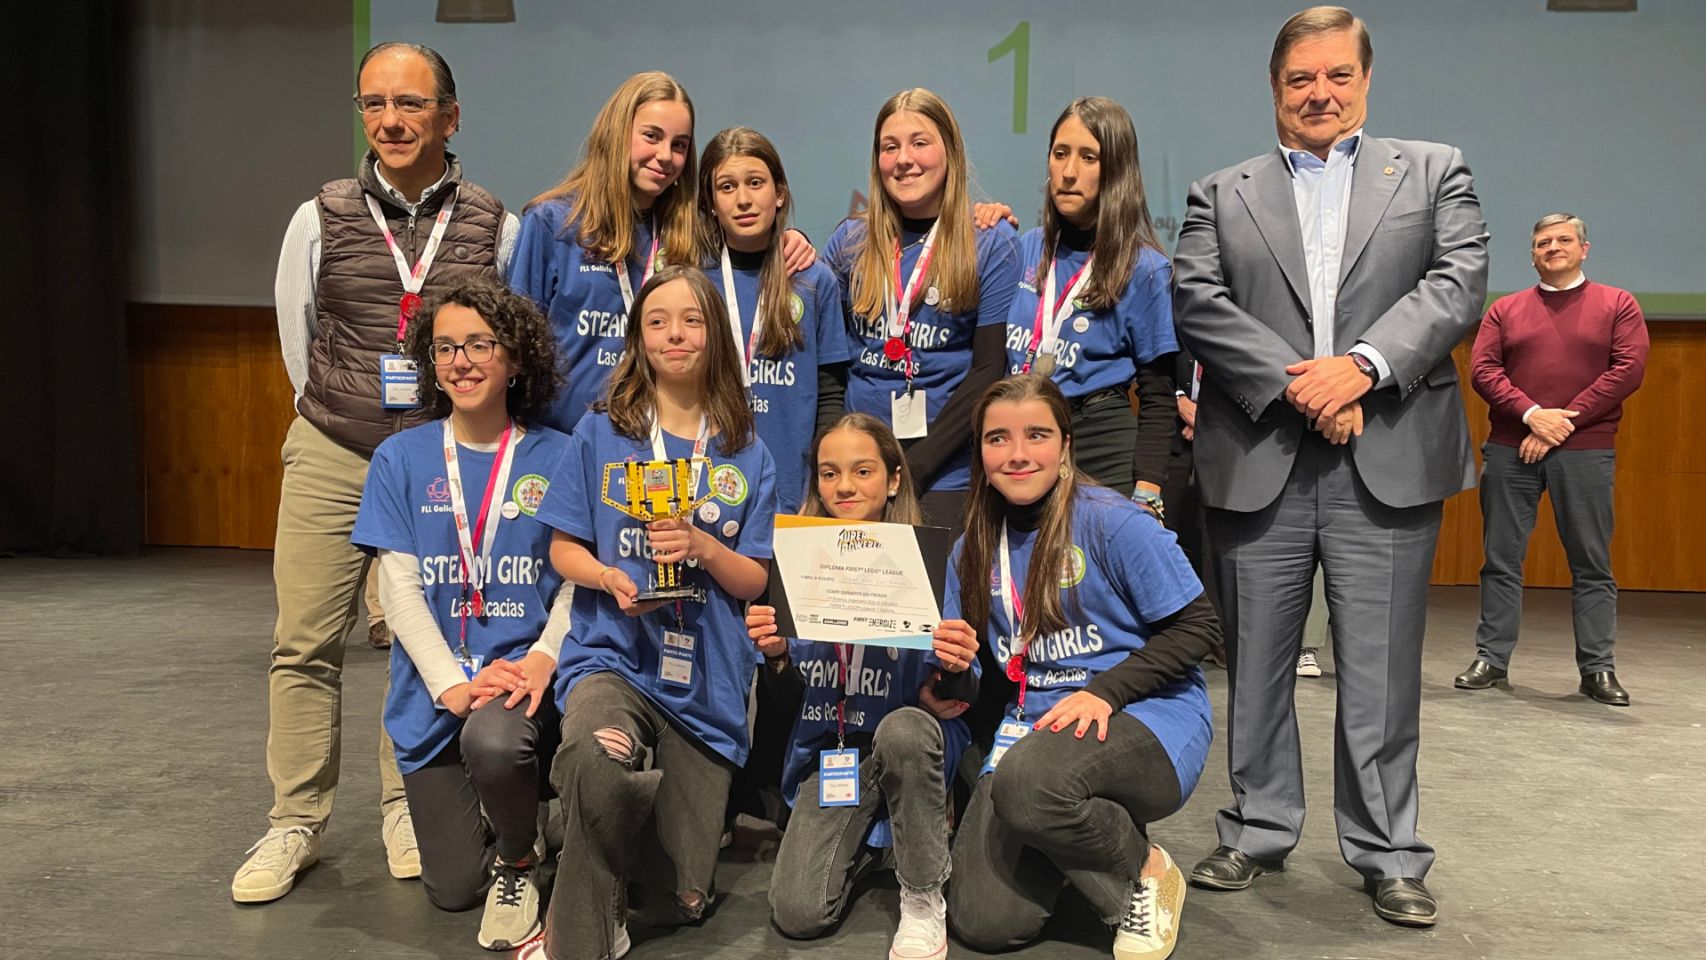 El rector de la Universidade da Coruña, Julio Abalde, entregó el Primer Premio Ingeniera Soy a las integrantes del equipo Steam Girls Las Acacias, del Colegio de Fomento Las Acacias de Vigo.